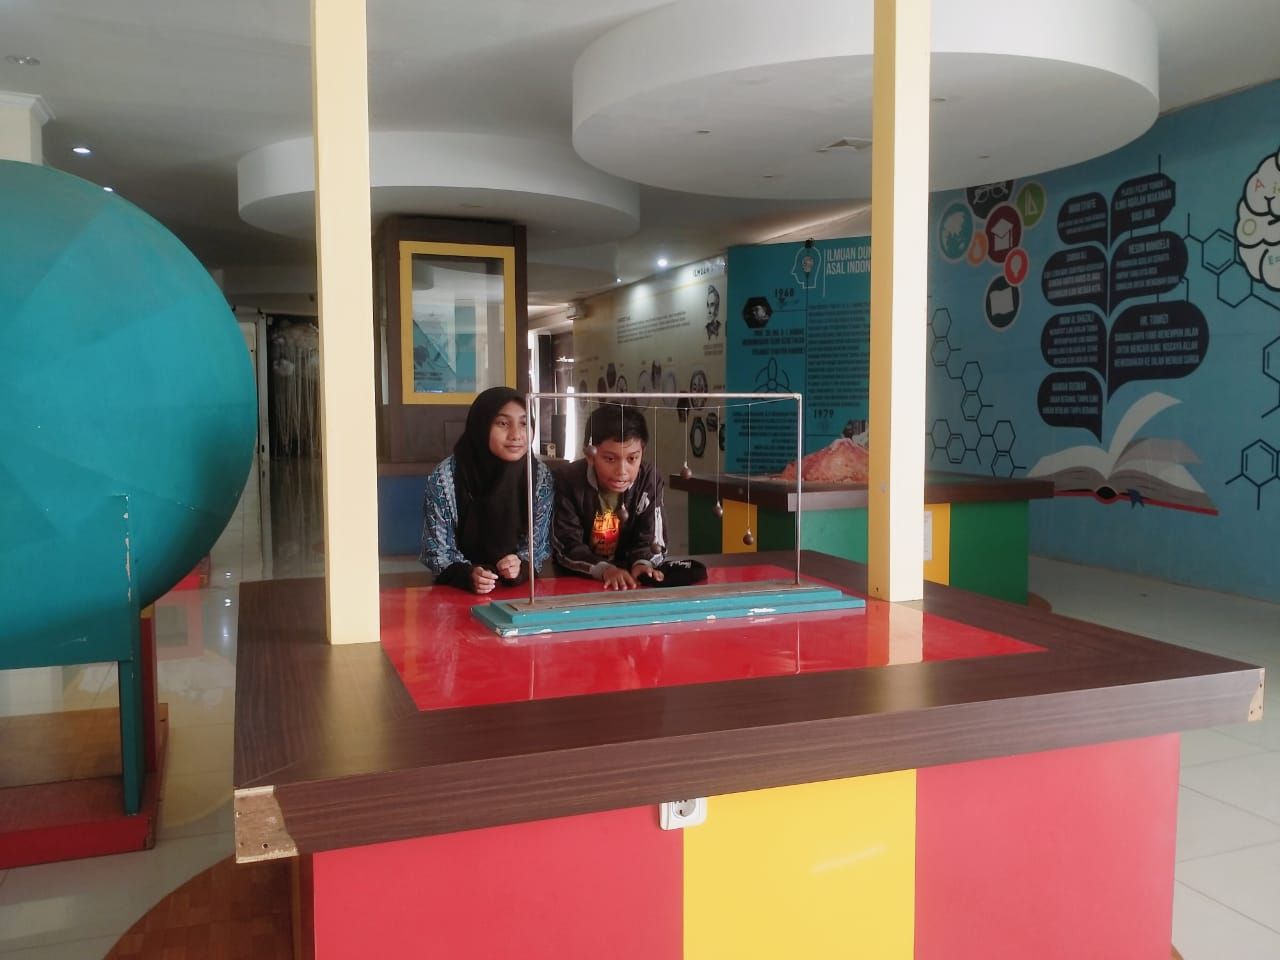 Science Center Soreang, objek wisata Bandung untuk libur anak sekolah, Kadisbudpar mengatakan destinasi ini sebagai wahana edukais masyarakat./ Feby Syarifah - GalamediaNews